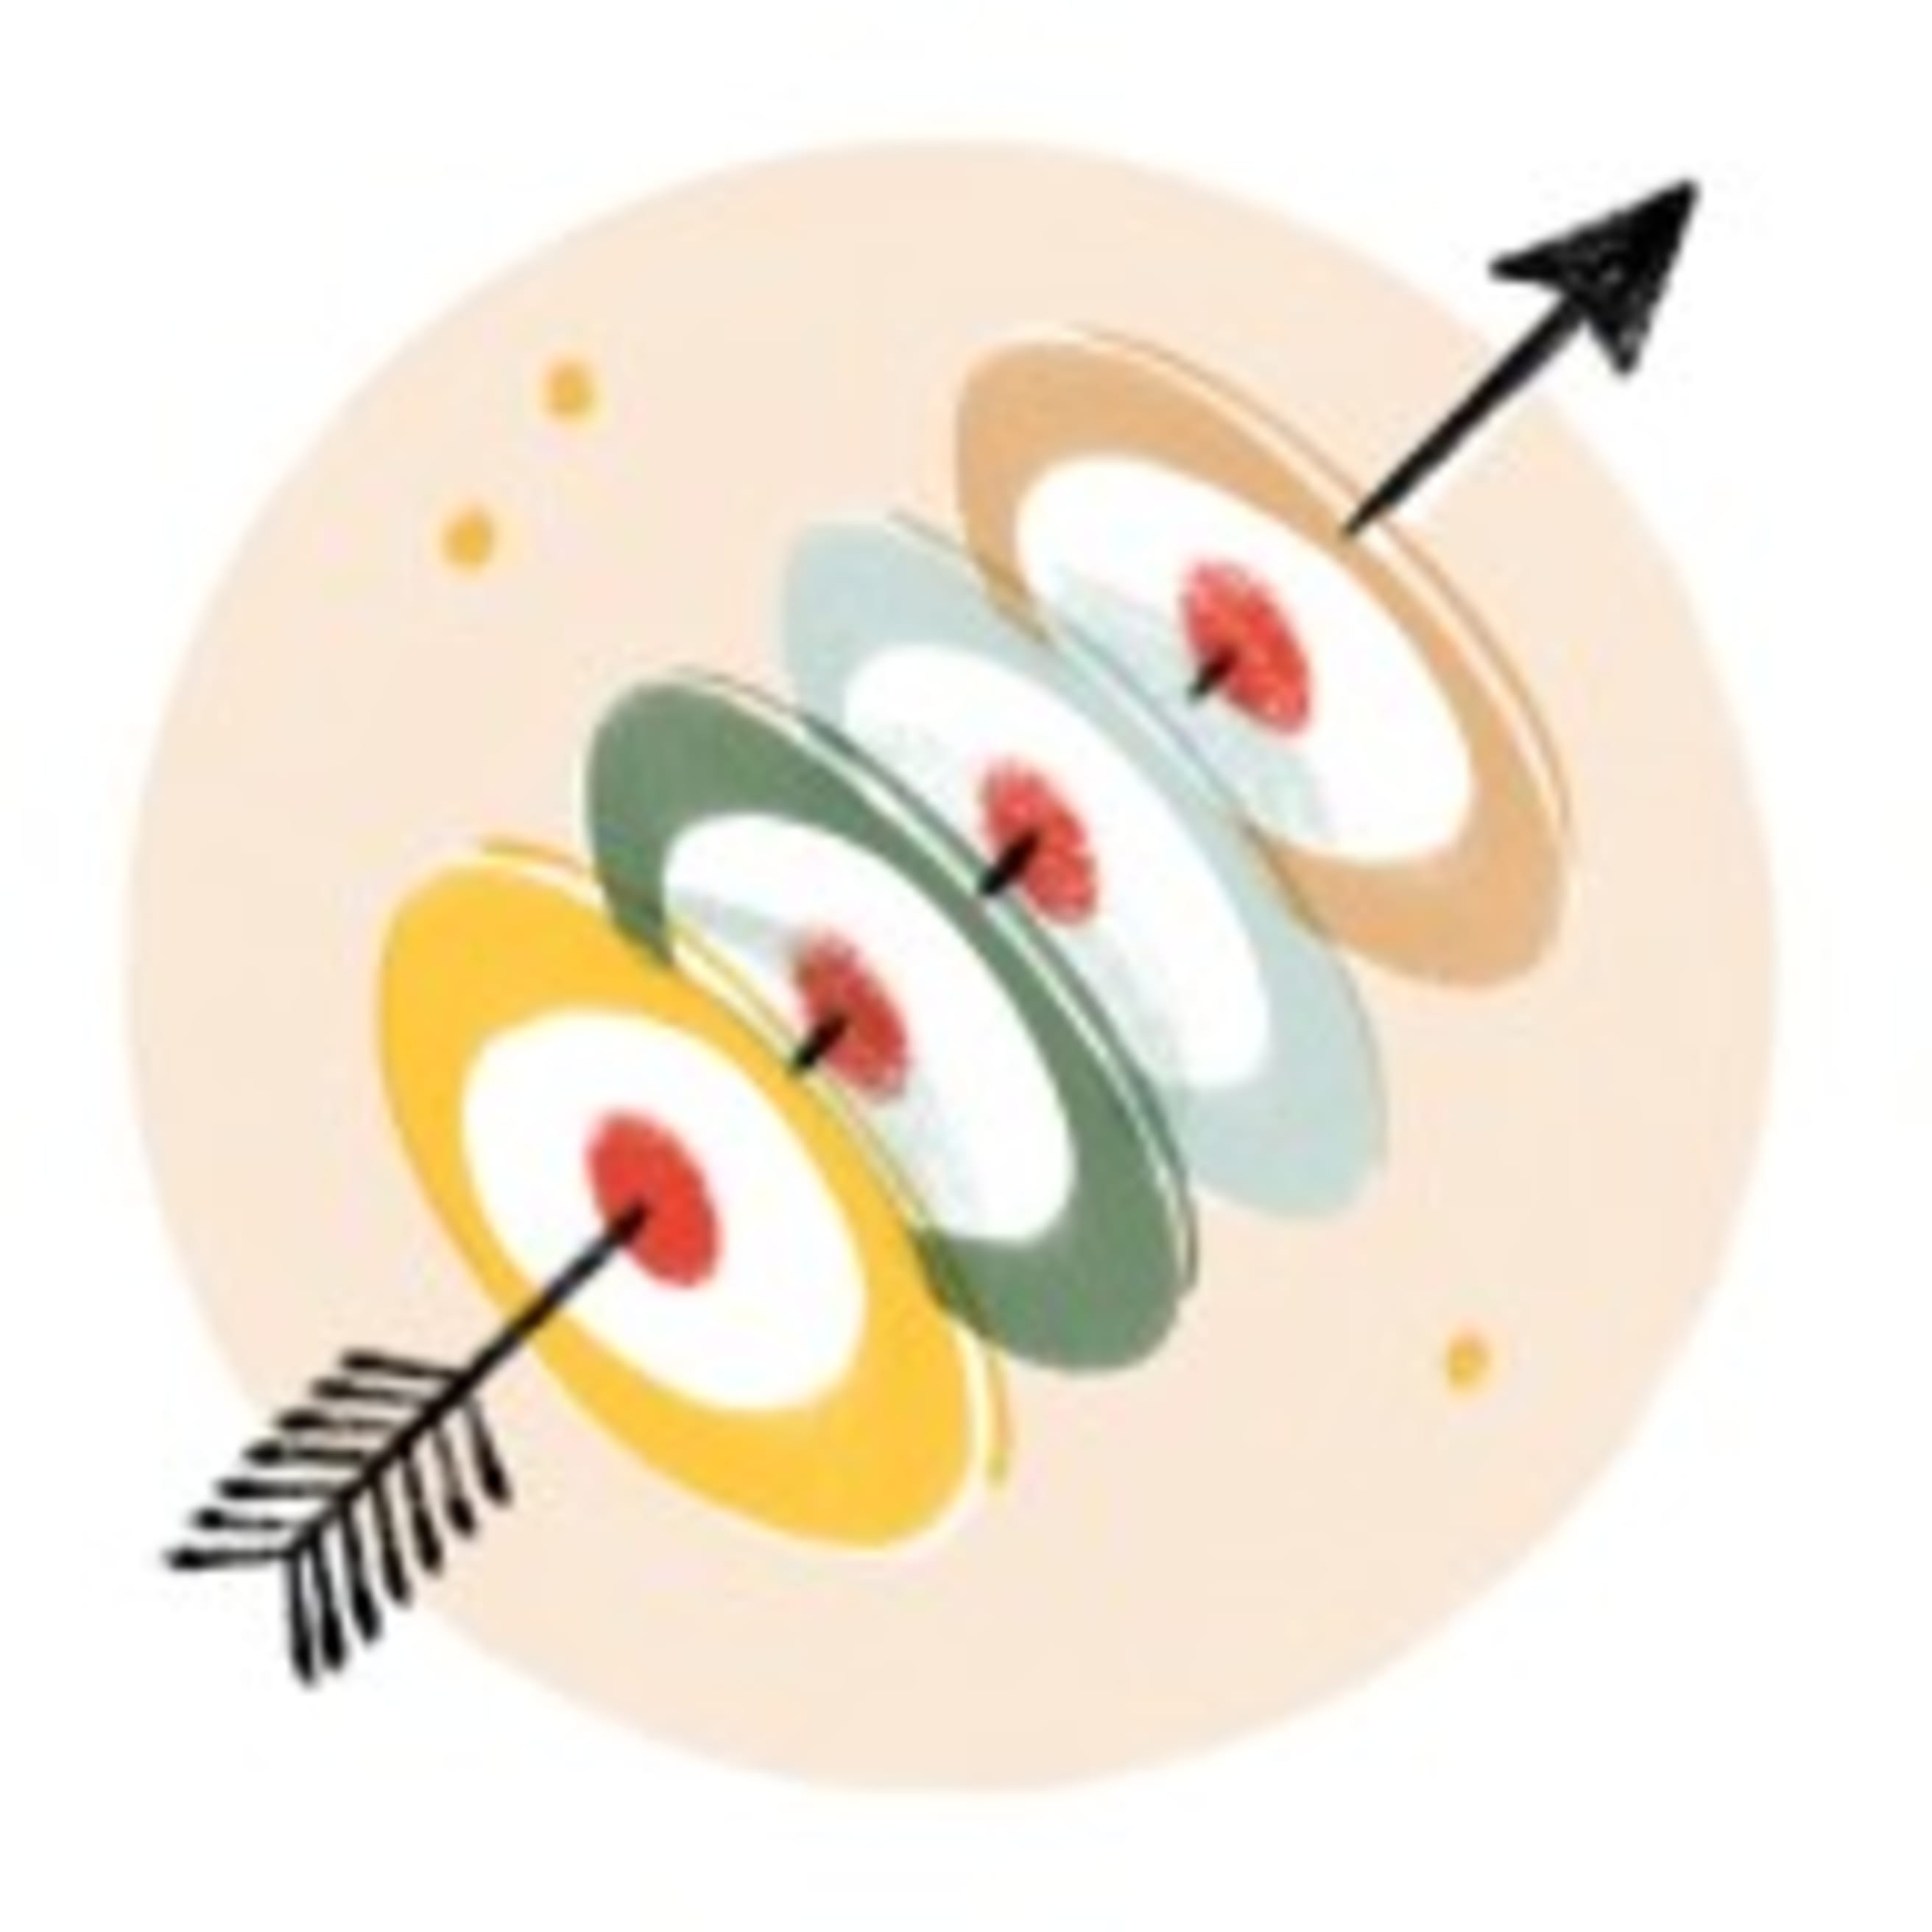 Templates - Arrow through targets icon